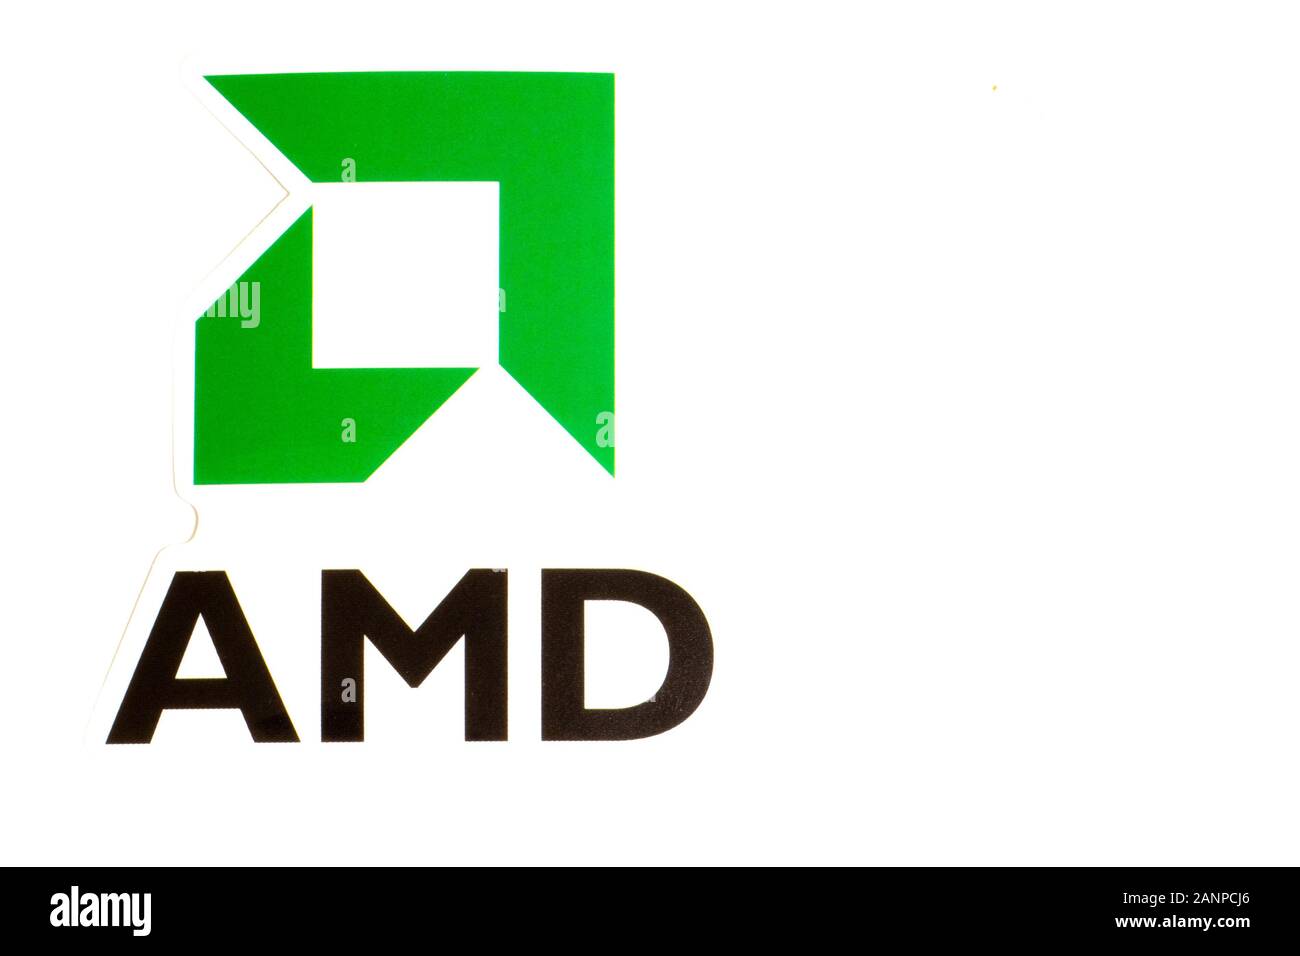 Los Angeles, Californie, États-Unis - 17 janvier 2020: Logo AMD sur fond blanc avec espace de copie, éditorial illustratif Banque D'Images